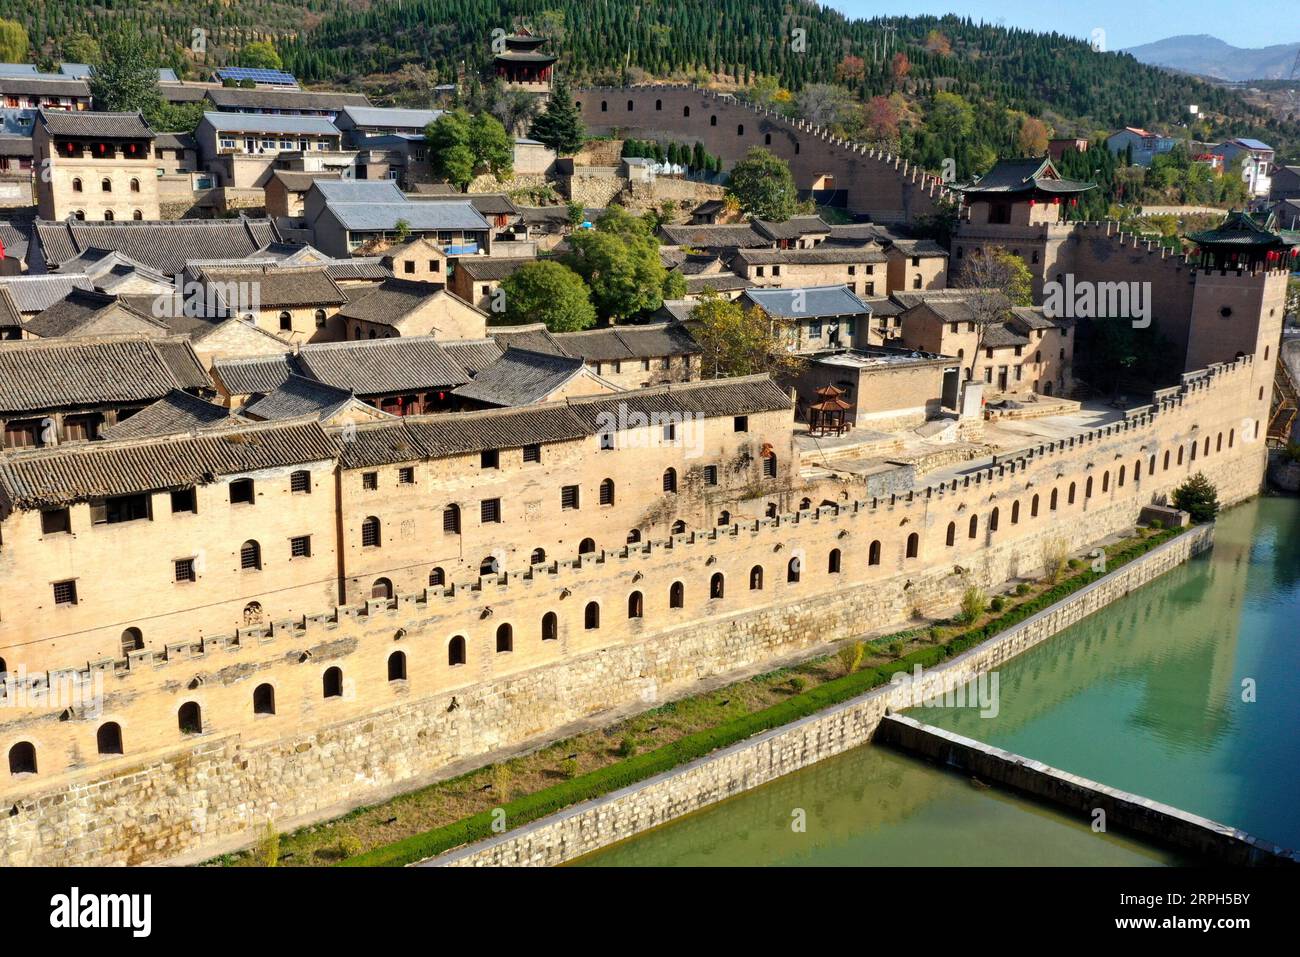 191030 -- JINCHENG, 30. Oktober 2019 -- Luftaufnahme, aufgenommen am 30. Oktober 2019, zeigt das Xiangyu Castle im Qinshui County, nordchinesische Provinz Shanxi. Die Burg Xiangyu, die in der Ming-Dynastie von 1368 bis 1644 erbaut wurde, hat viele Touristen mit ihrem schönen Graben, einzigartigen Mauern und Innenhöfen angezogen. CHINA-SHANXI-ALTE BURG CN CaoxYang PUBLICATIONxNOTxINxCHN Stockfoto